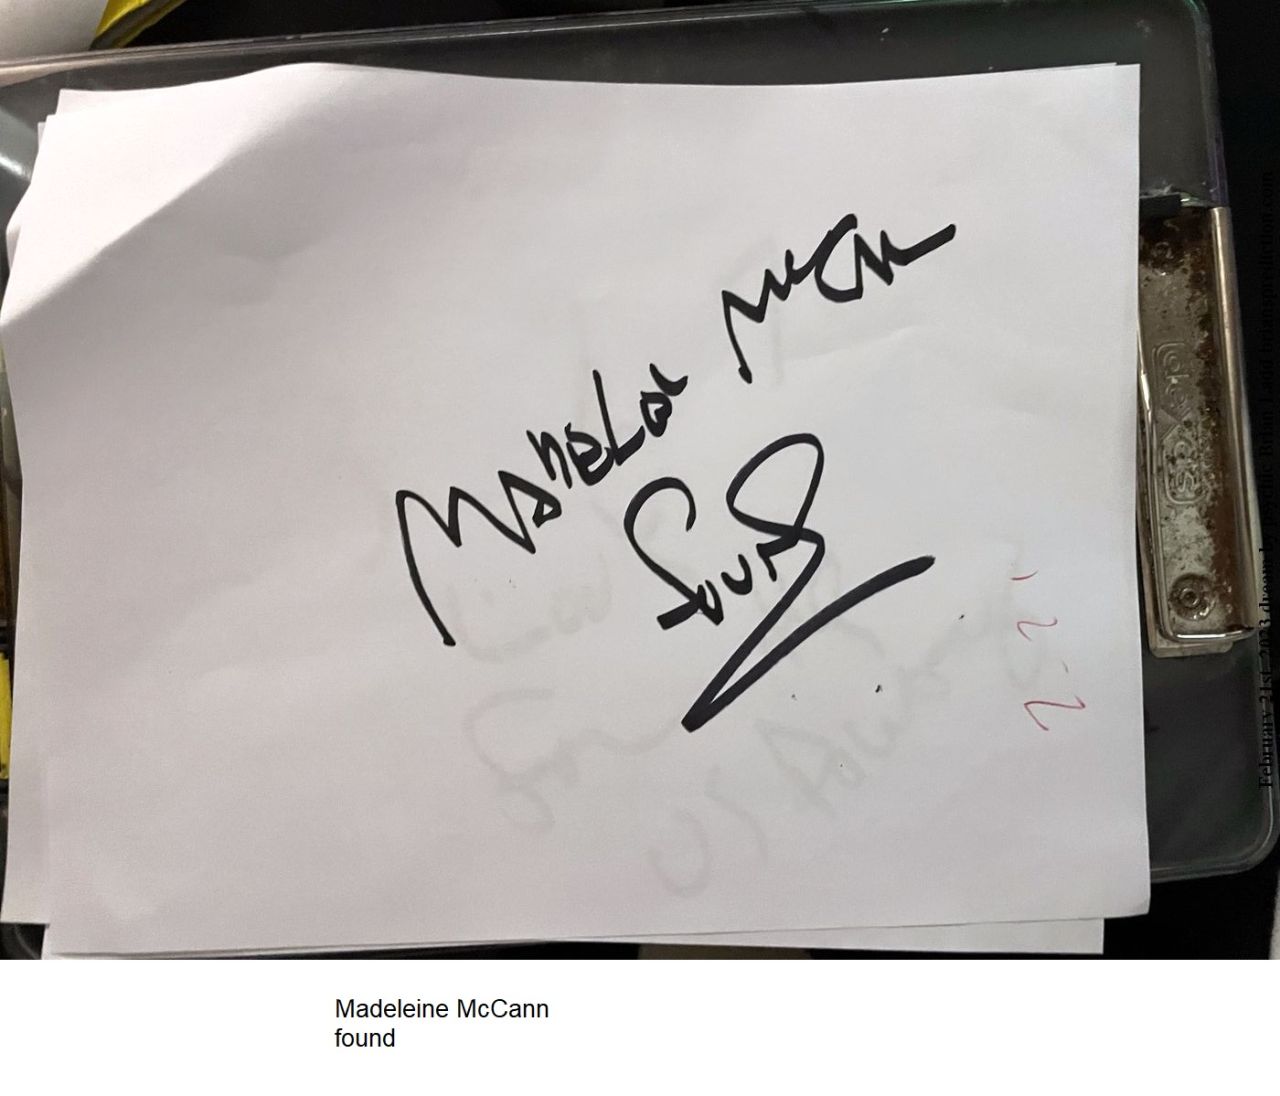 21 feb 2023 2 Madeleine McCann found...
Madeleine McCann found. 
